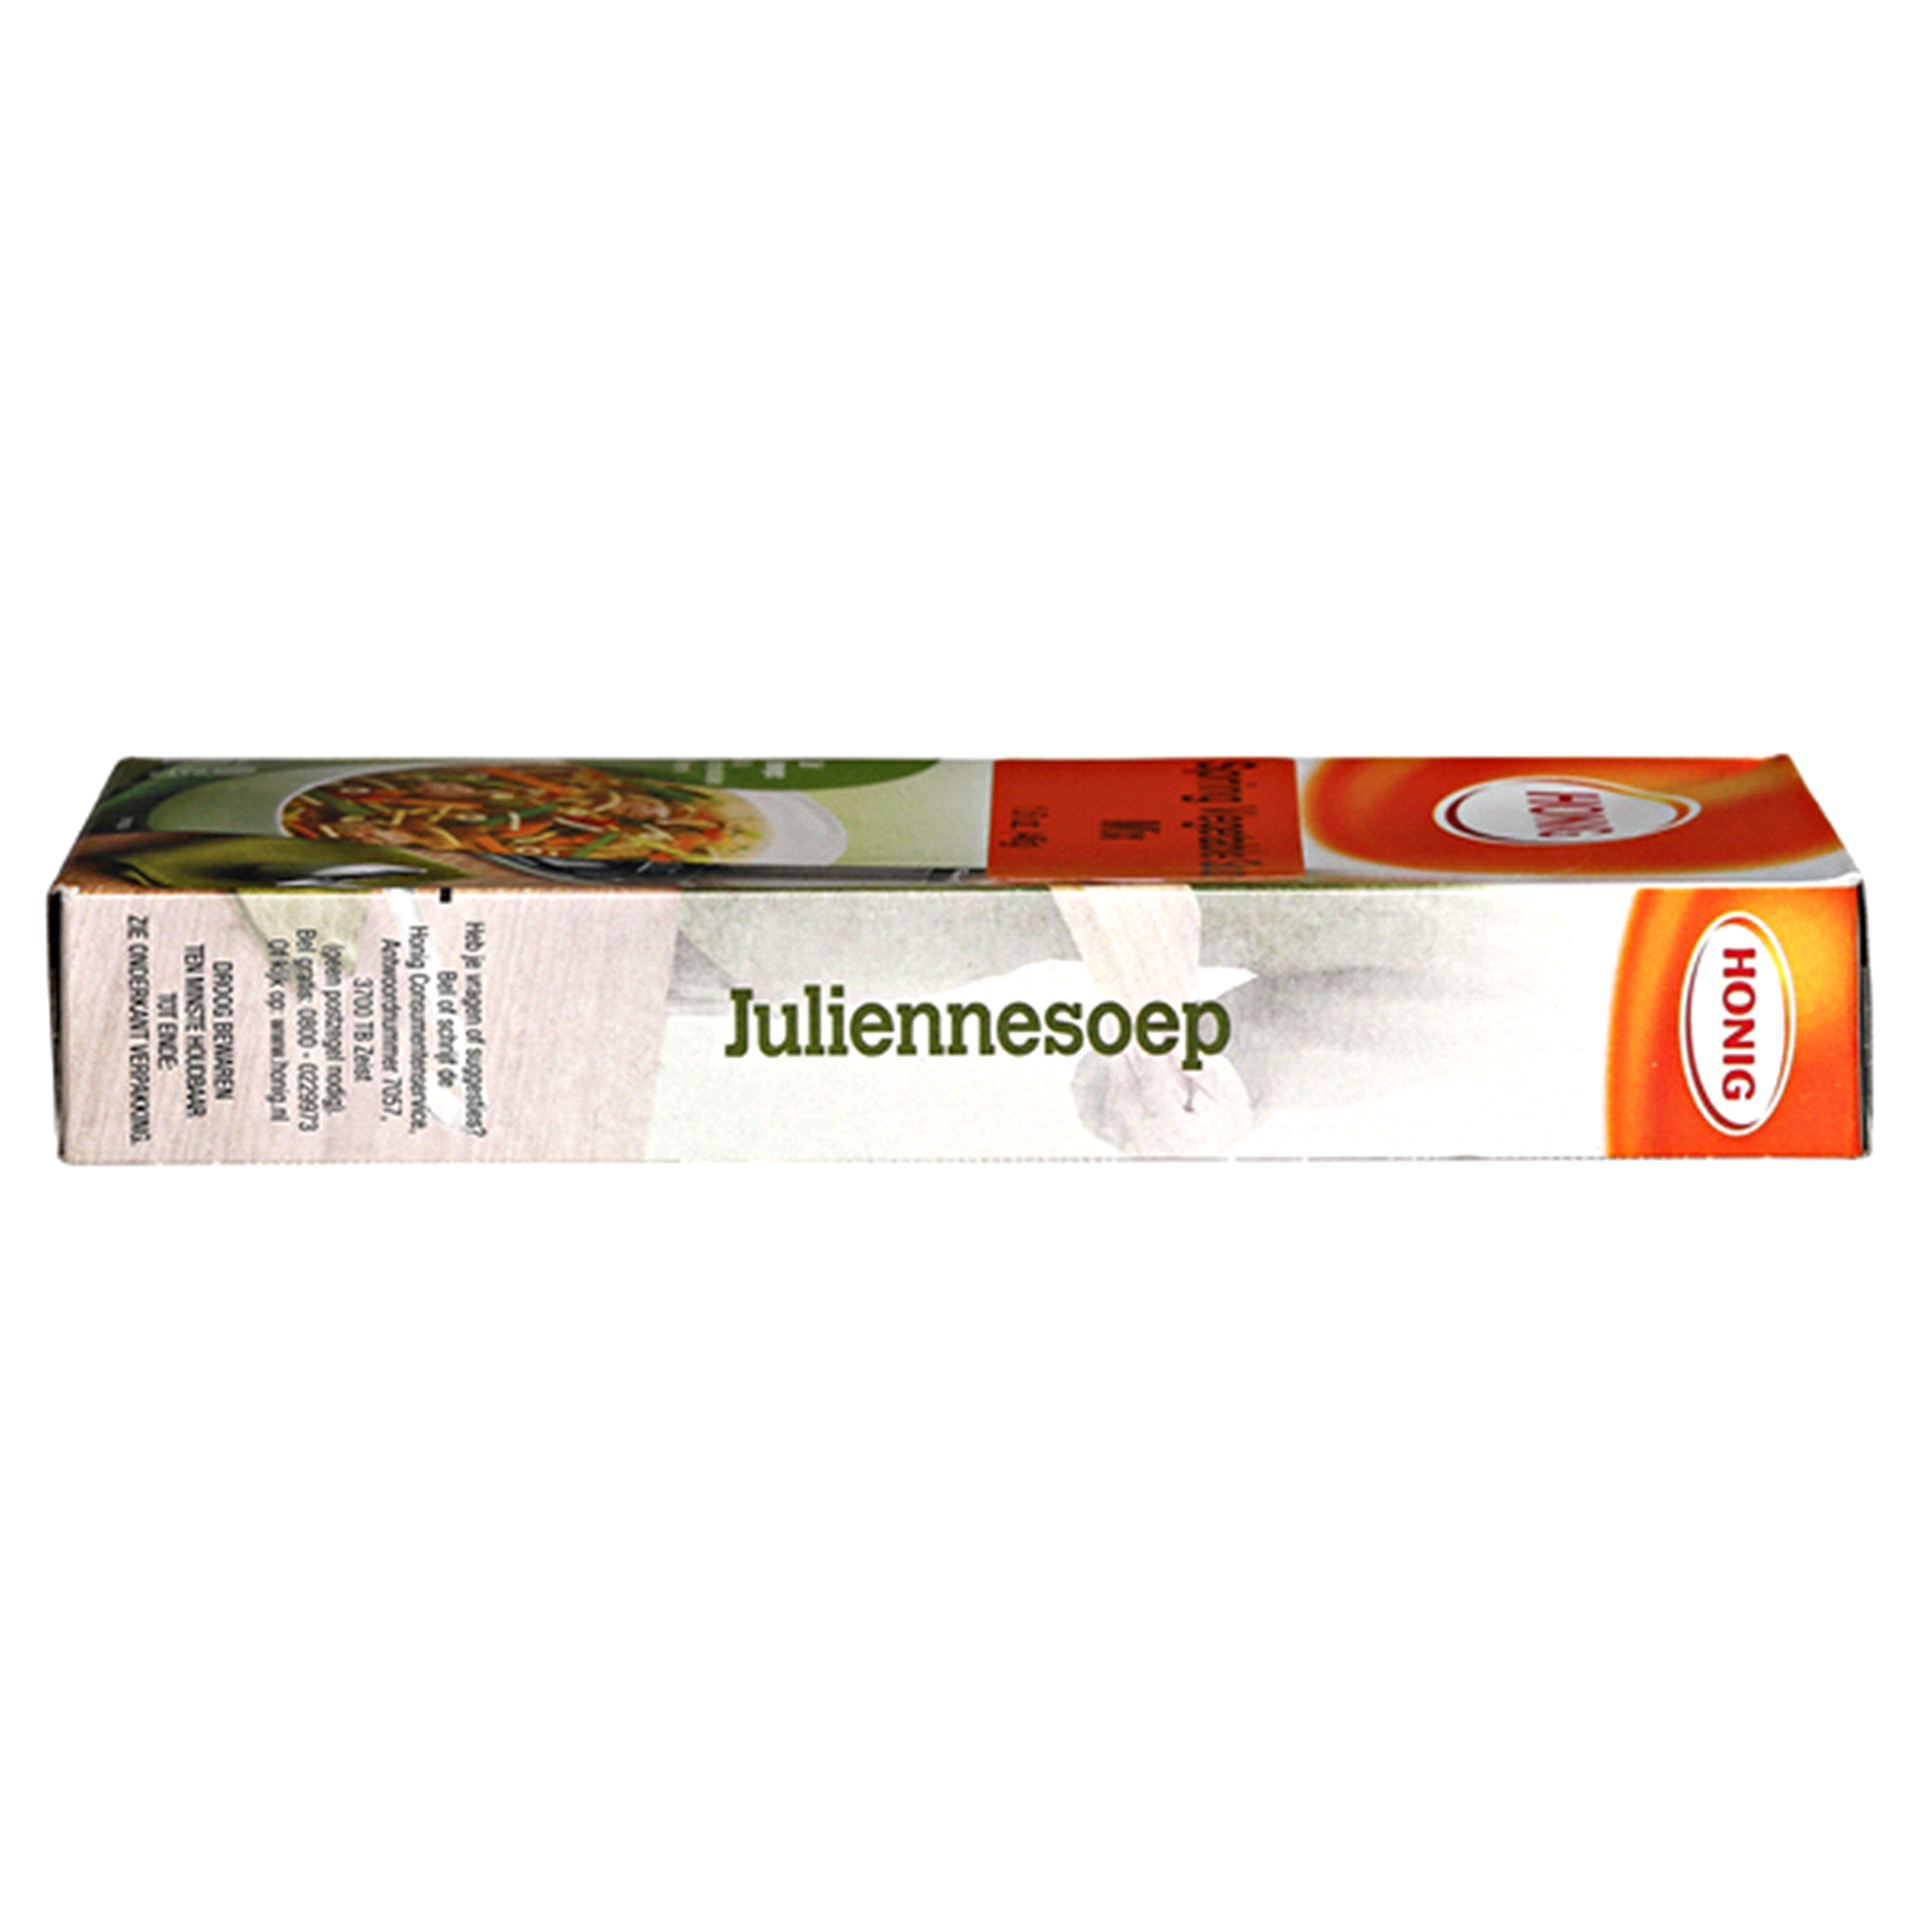 slide 25 of 29, Honig Spring Vegetable Soup Mix, Julienne, 1.6 oz